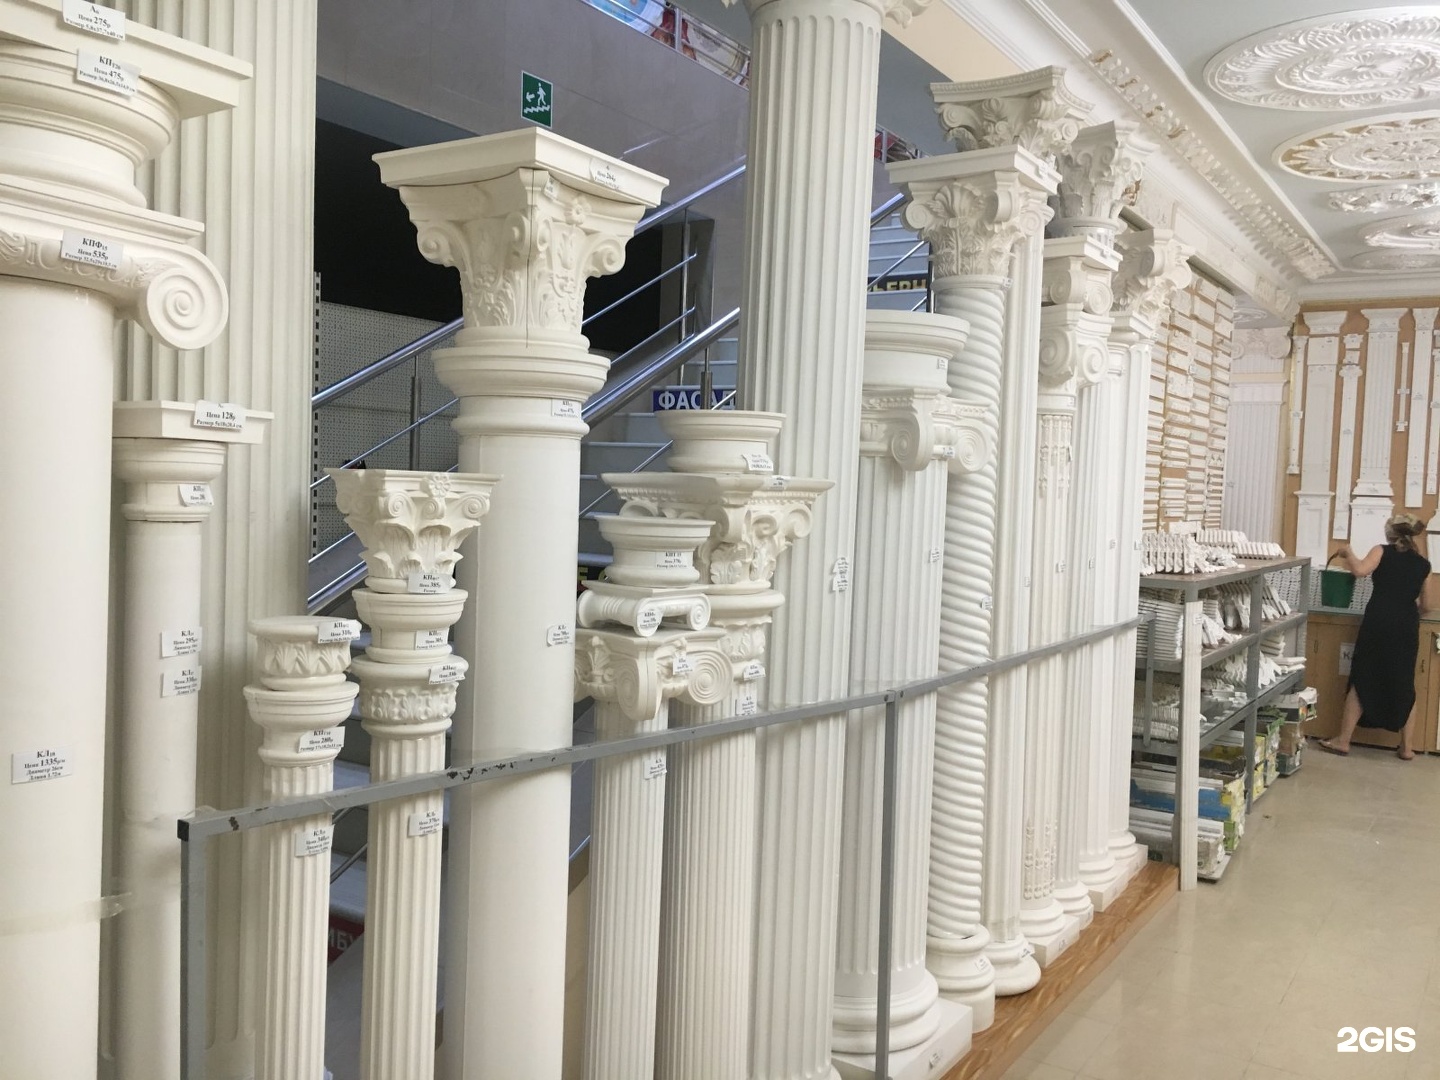 декоративные колонны из полиуретана фото